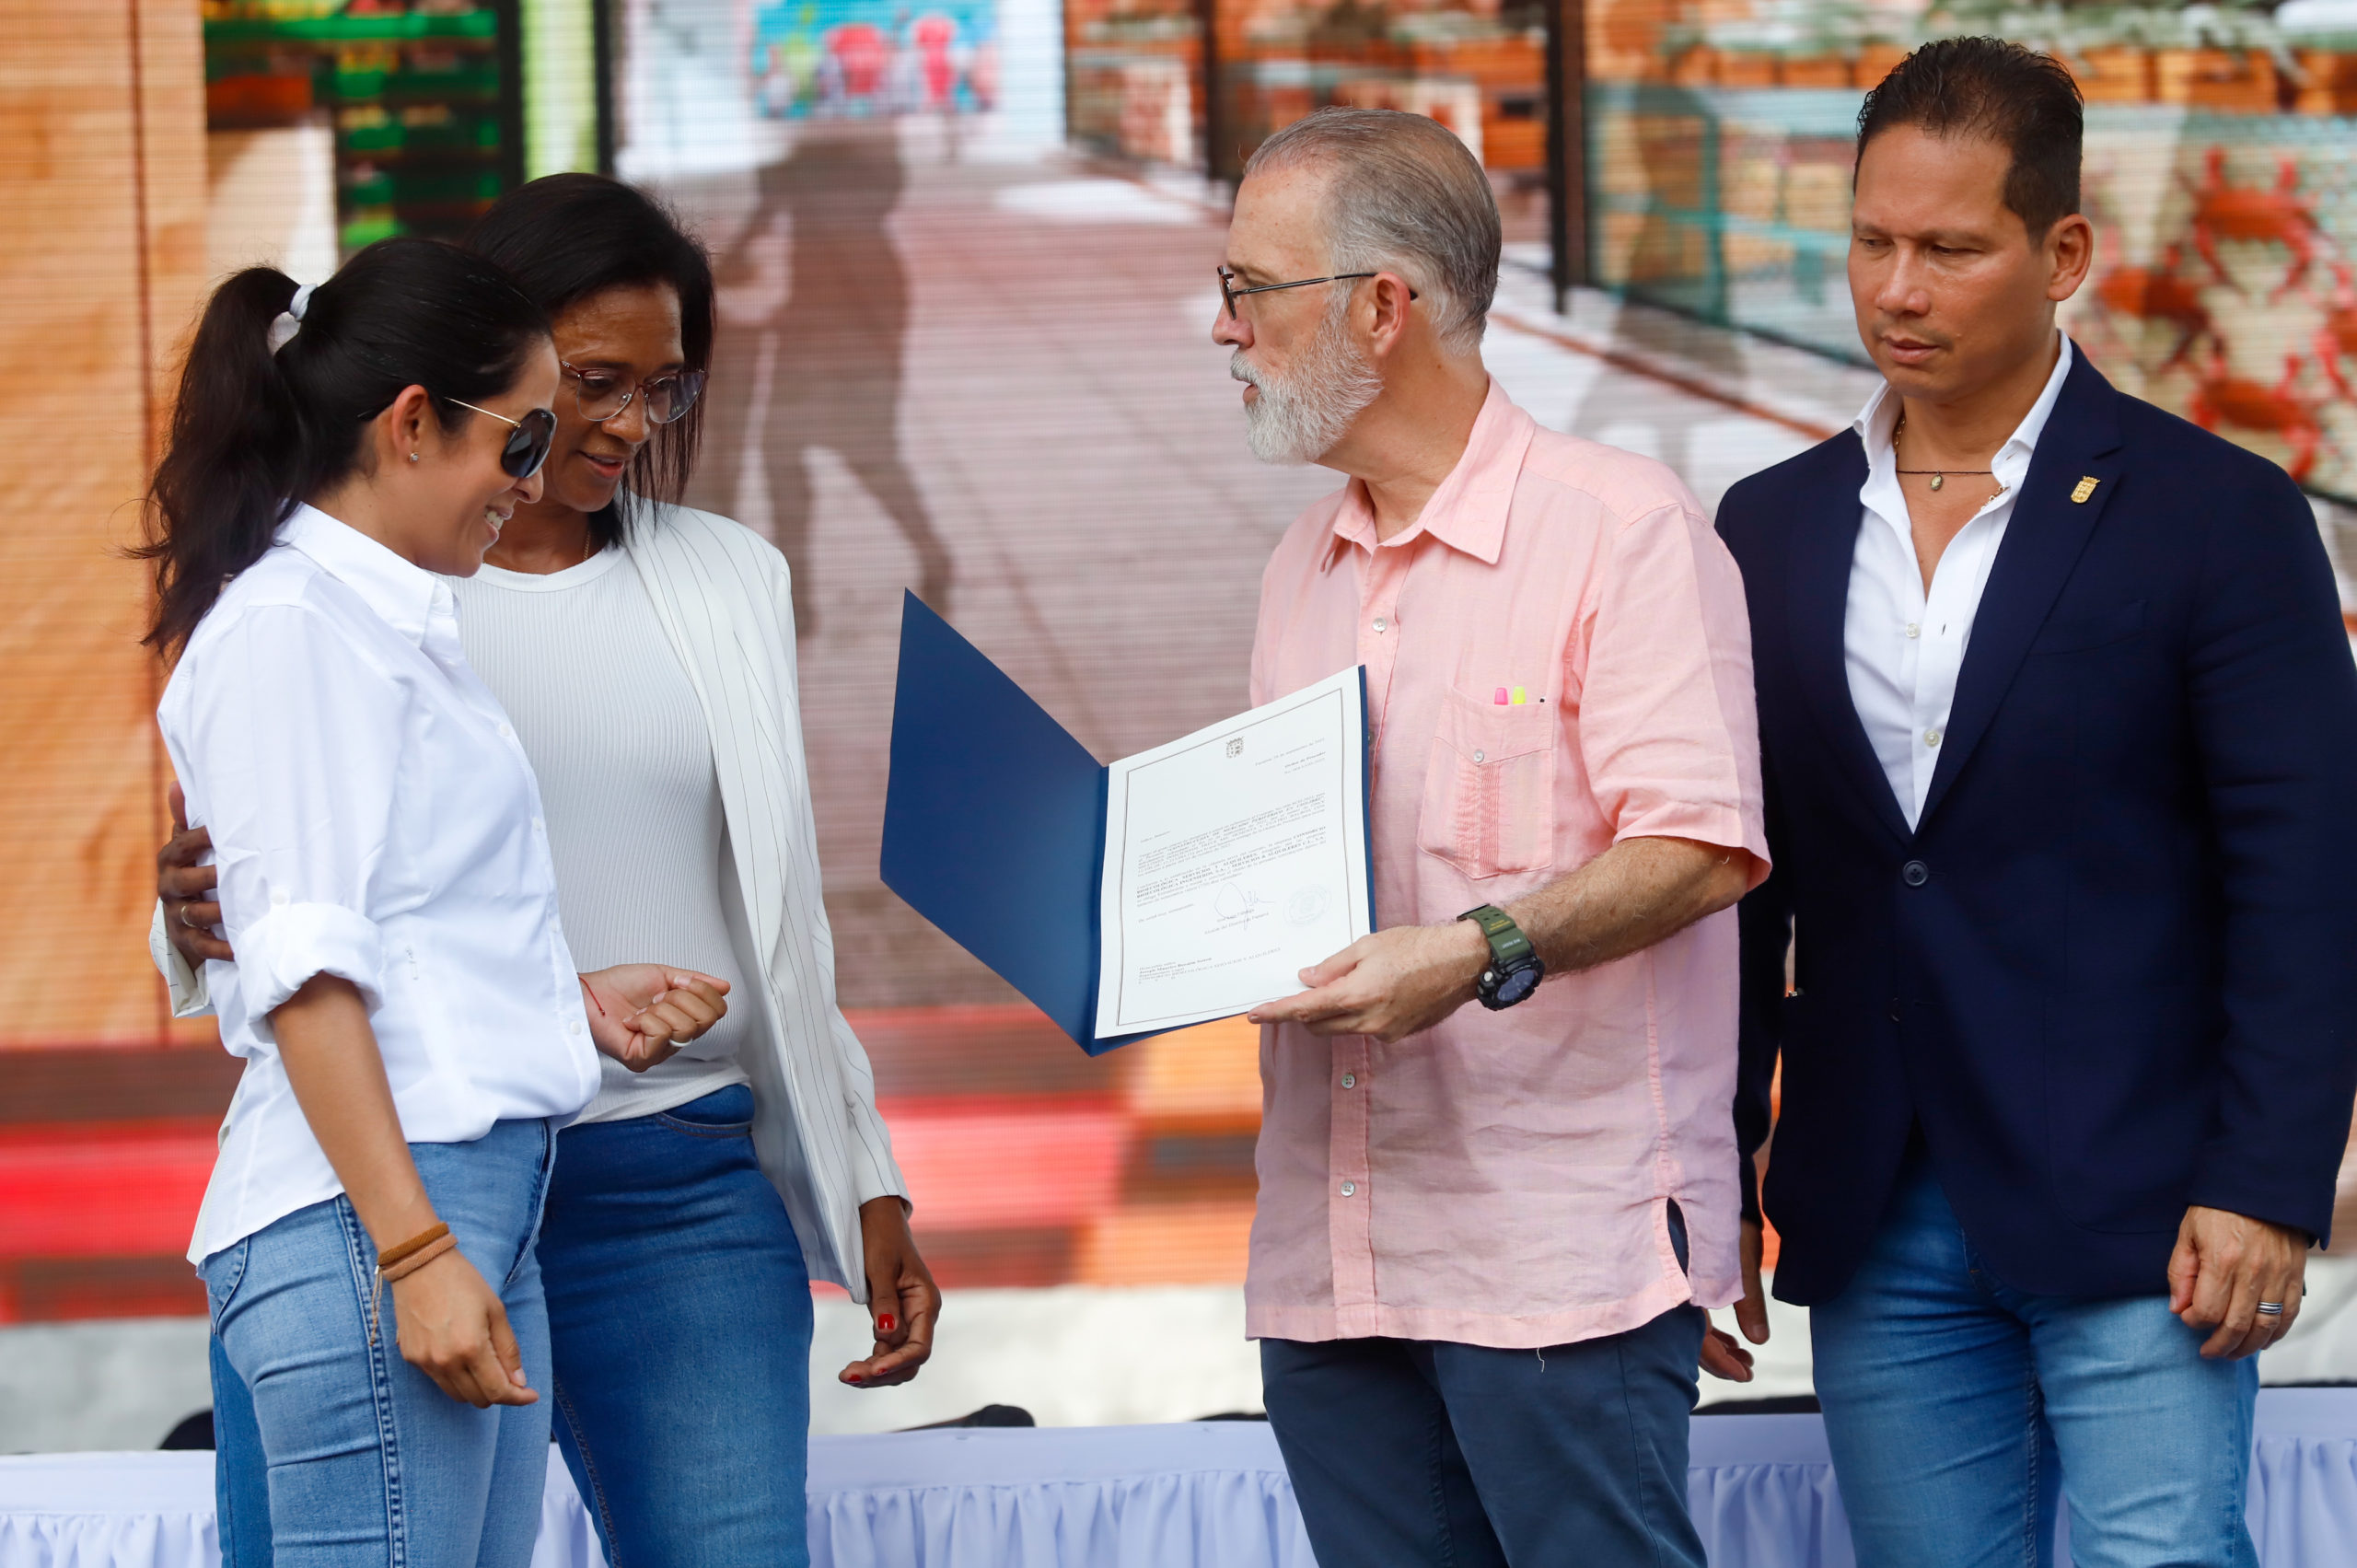 Alcaldía de Panamá entrega orden de proceder para la construcción del nuevo Mercado de Chilibre